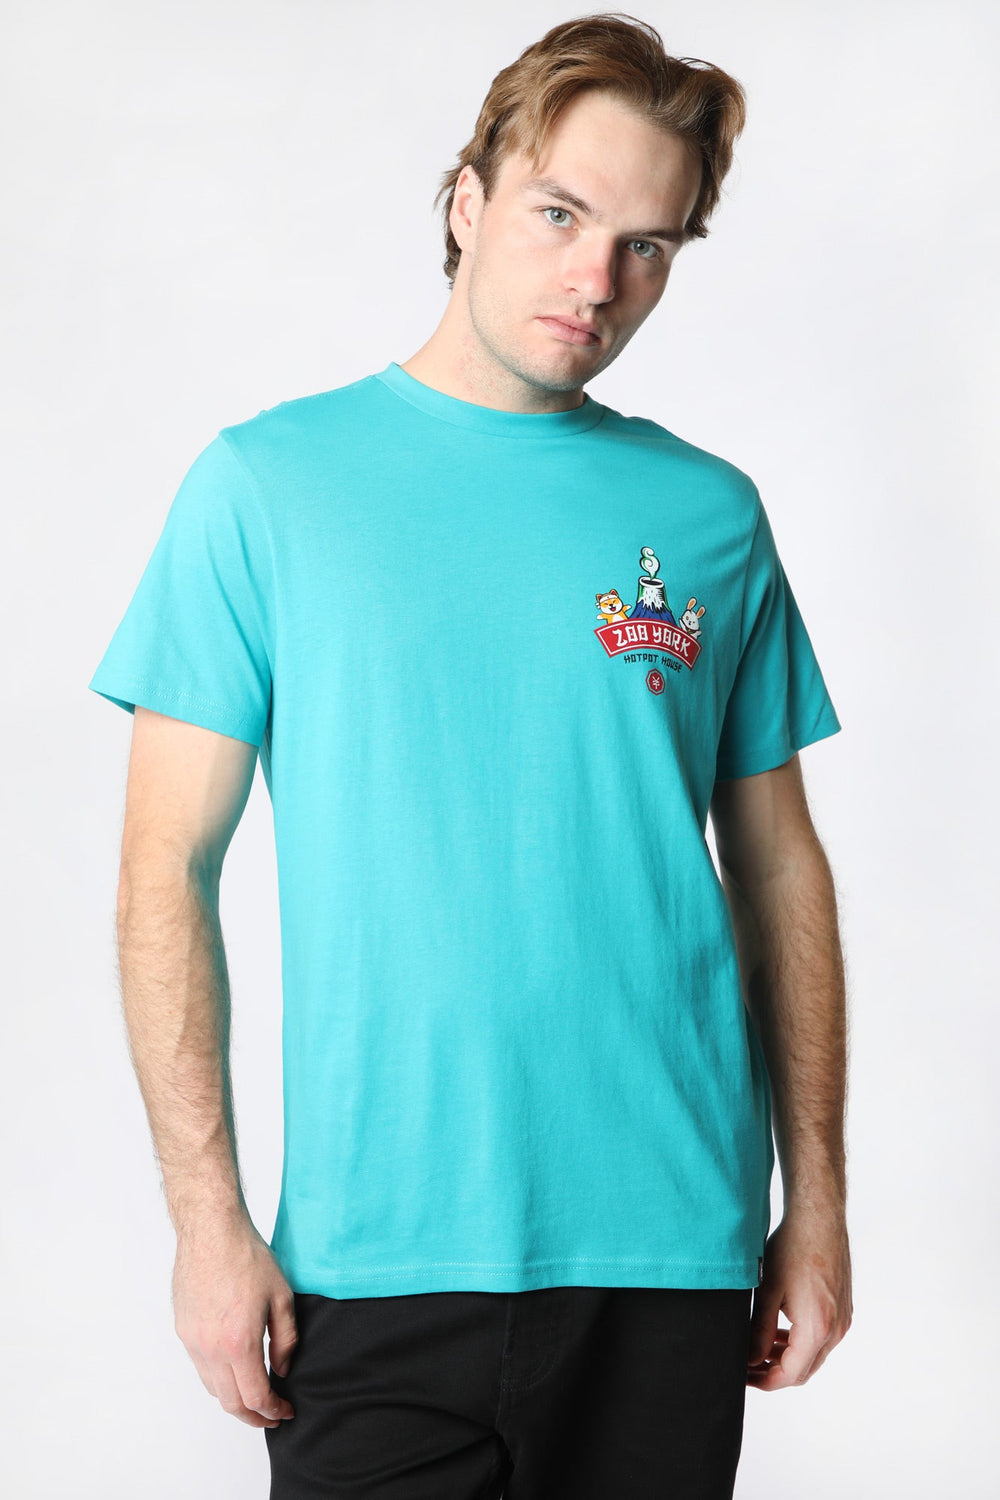 T-Shirt Imprimé Hot Pot Zoo York Unisexe Bleu